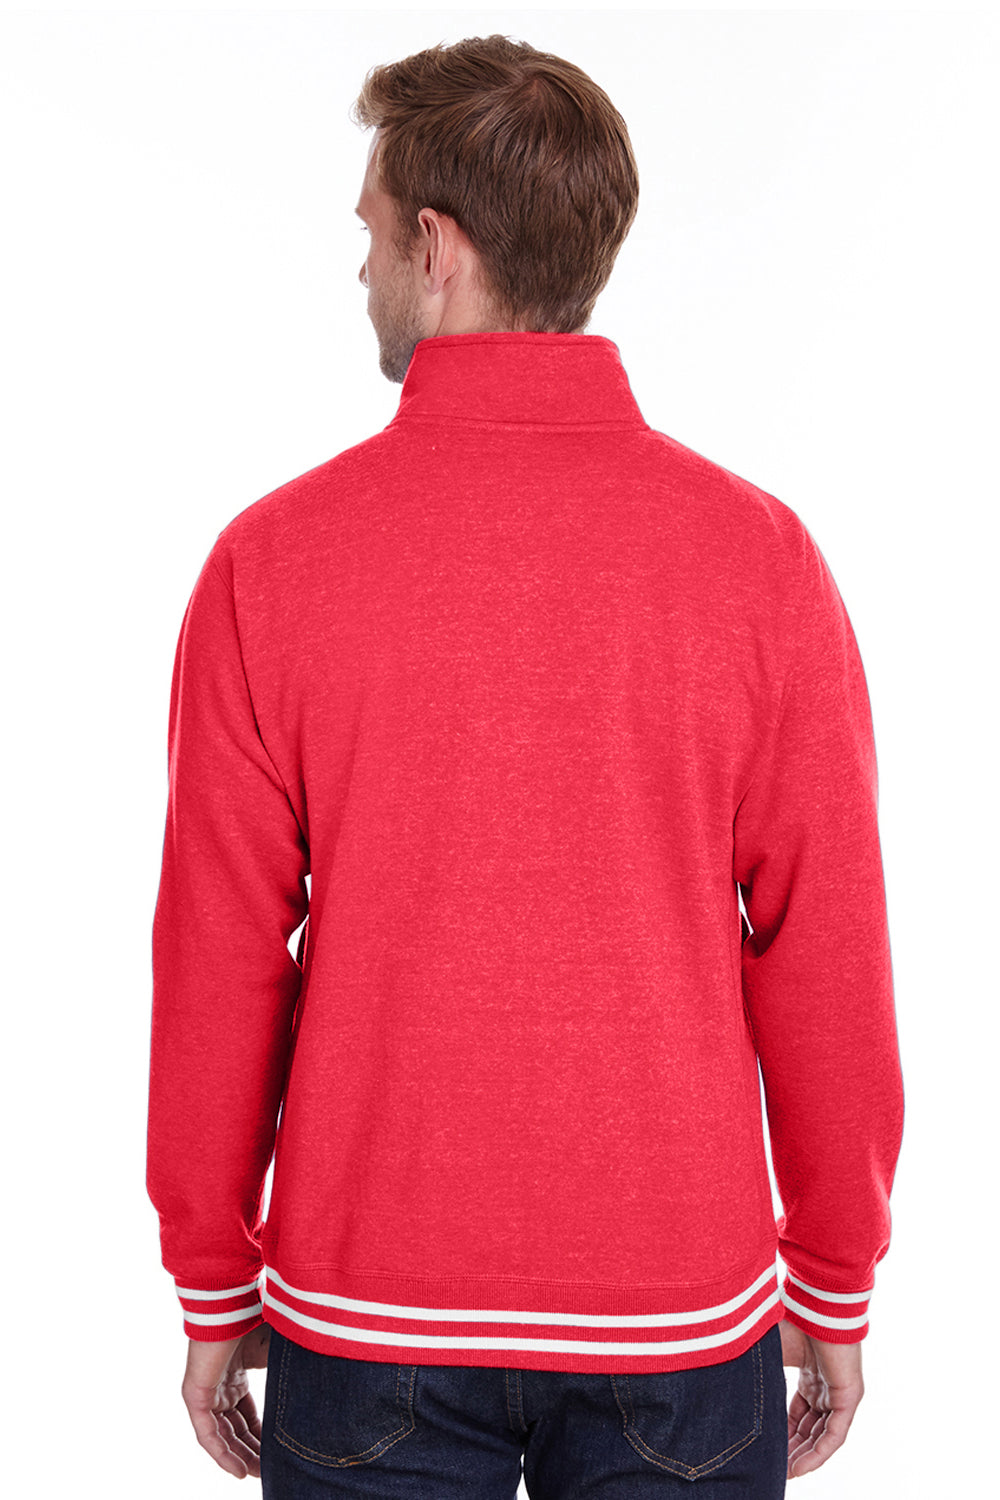 J America JA8650 Mens Relay Fleece 1/4 Zip Sweatshirt Red Back